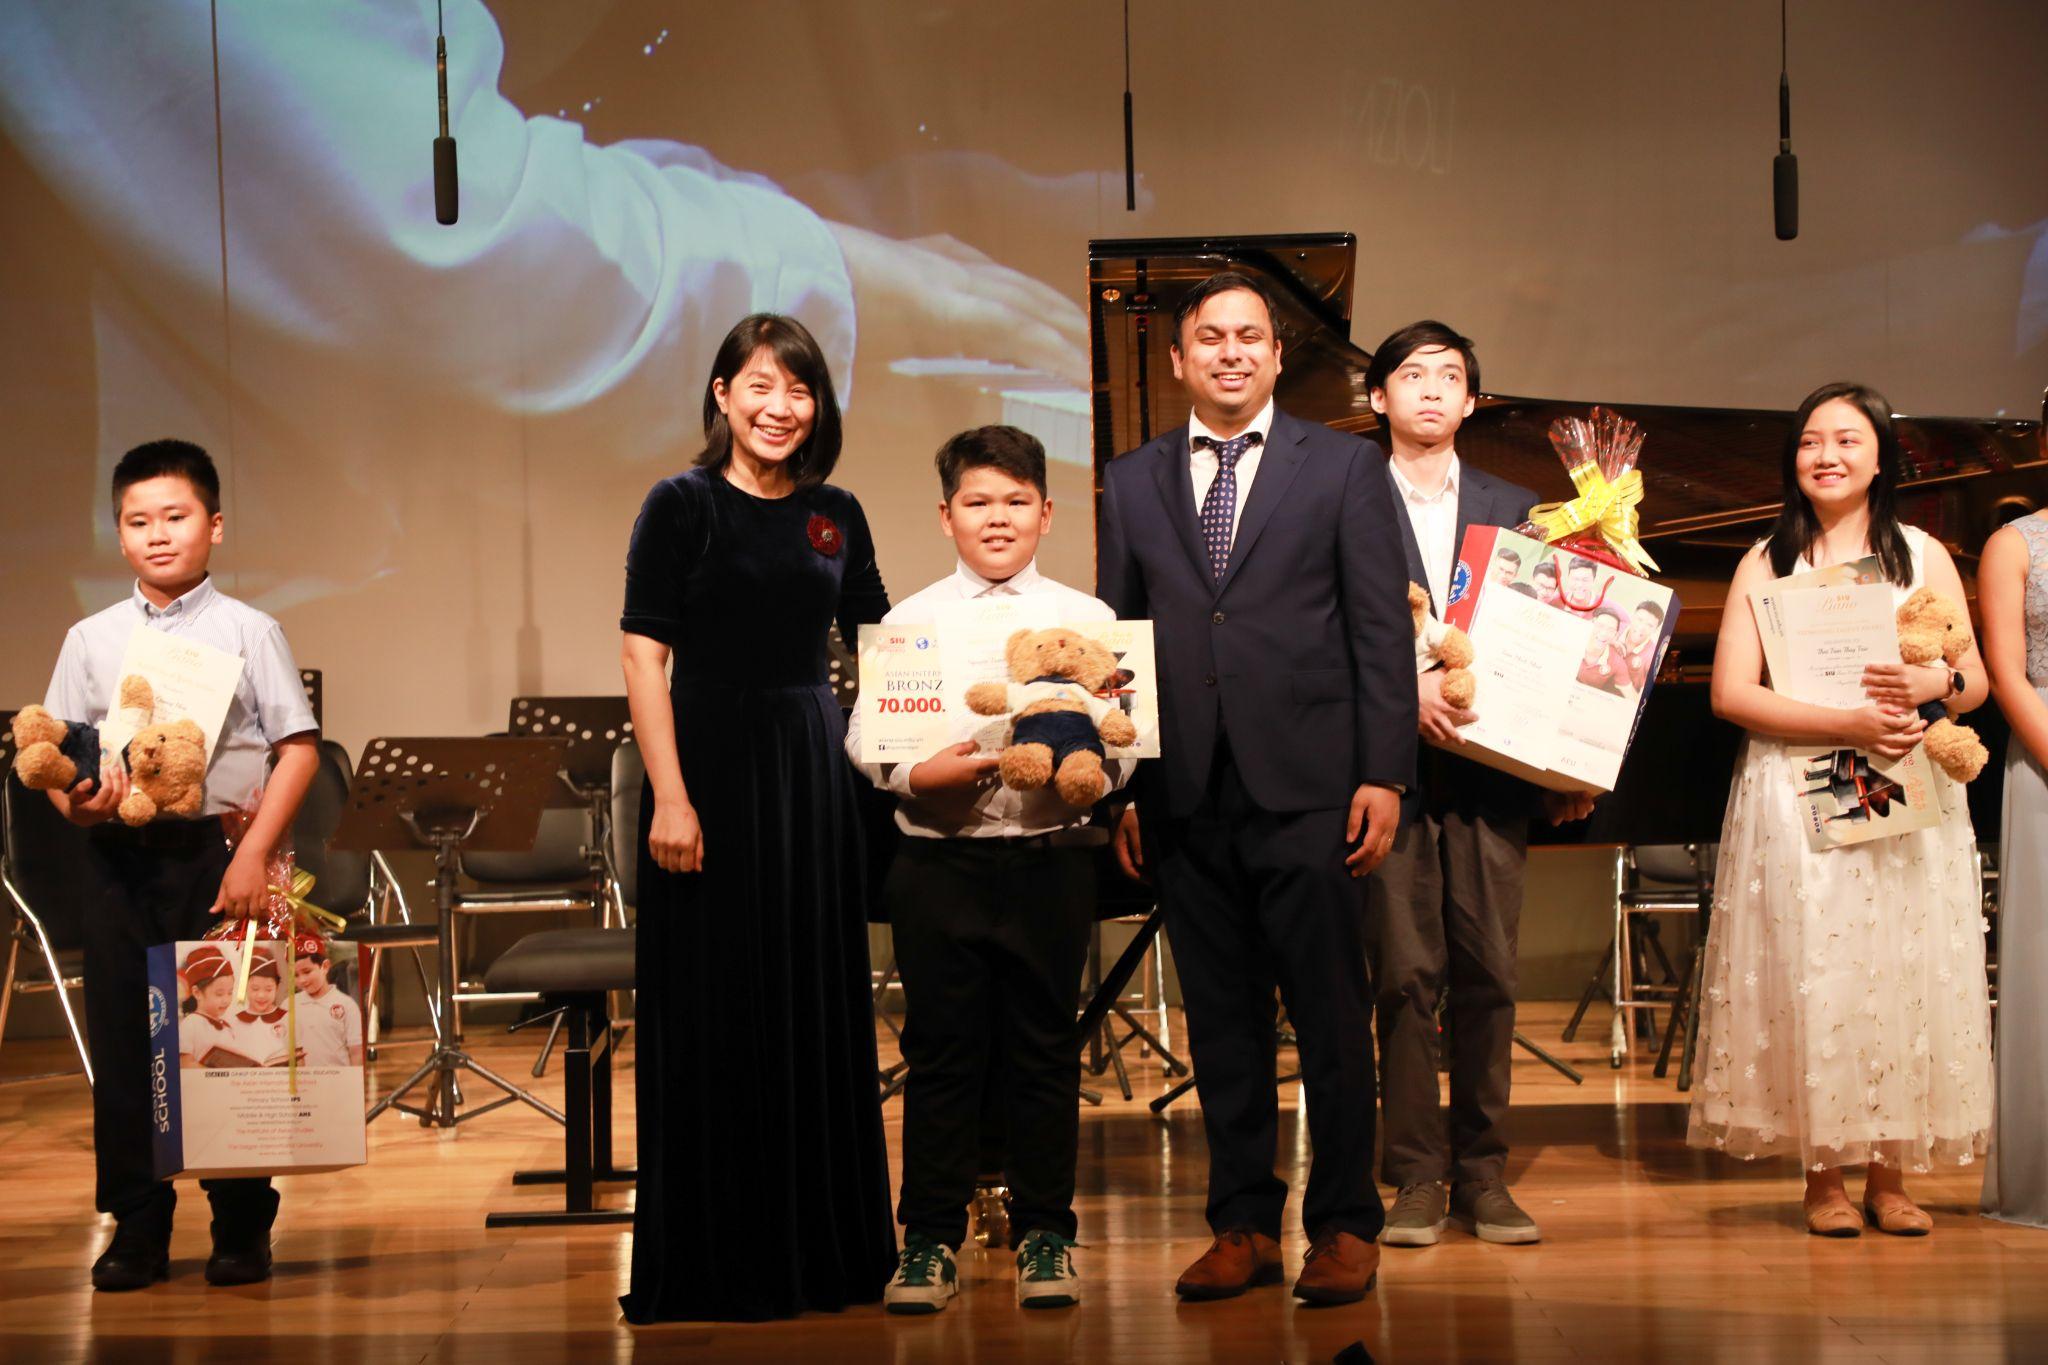 Lắng đọng cảm xúc tại Gala trao giải Cuộc thi Piano SIU 2022